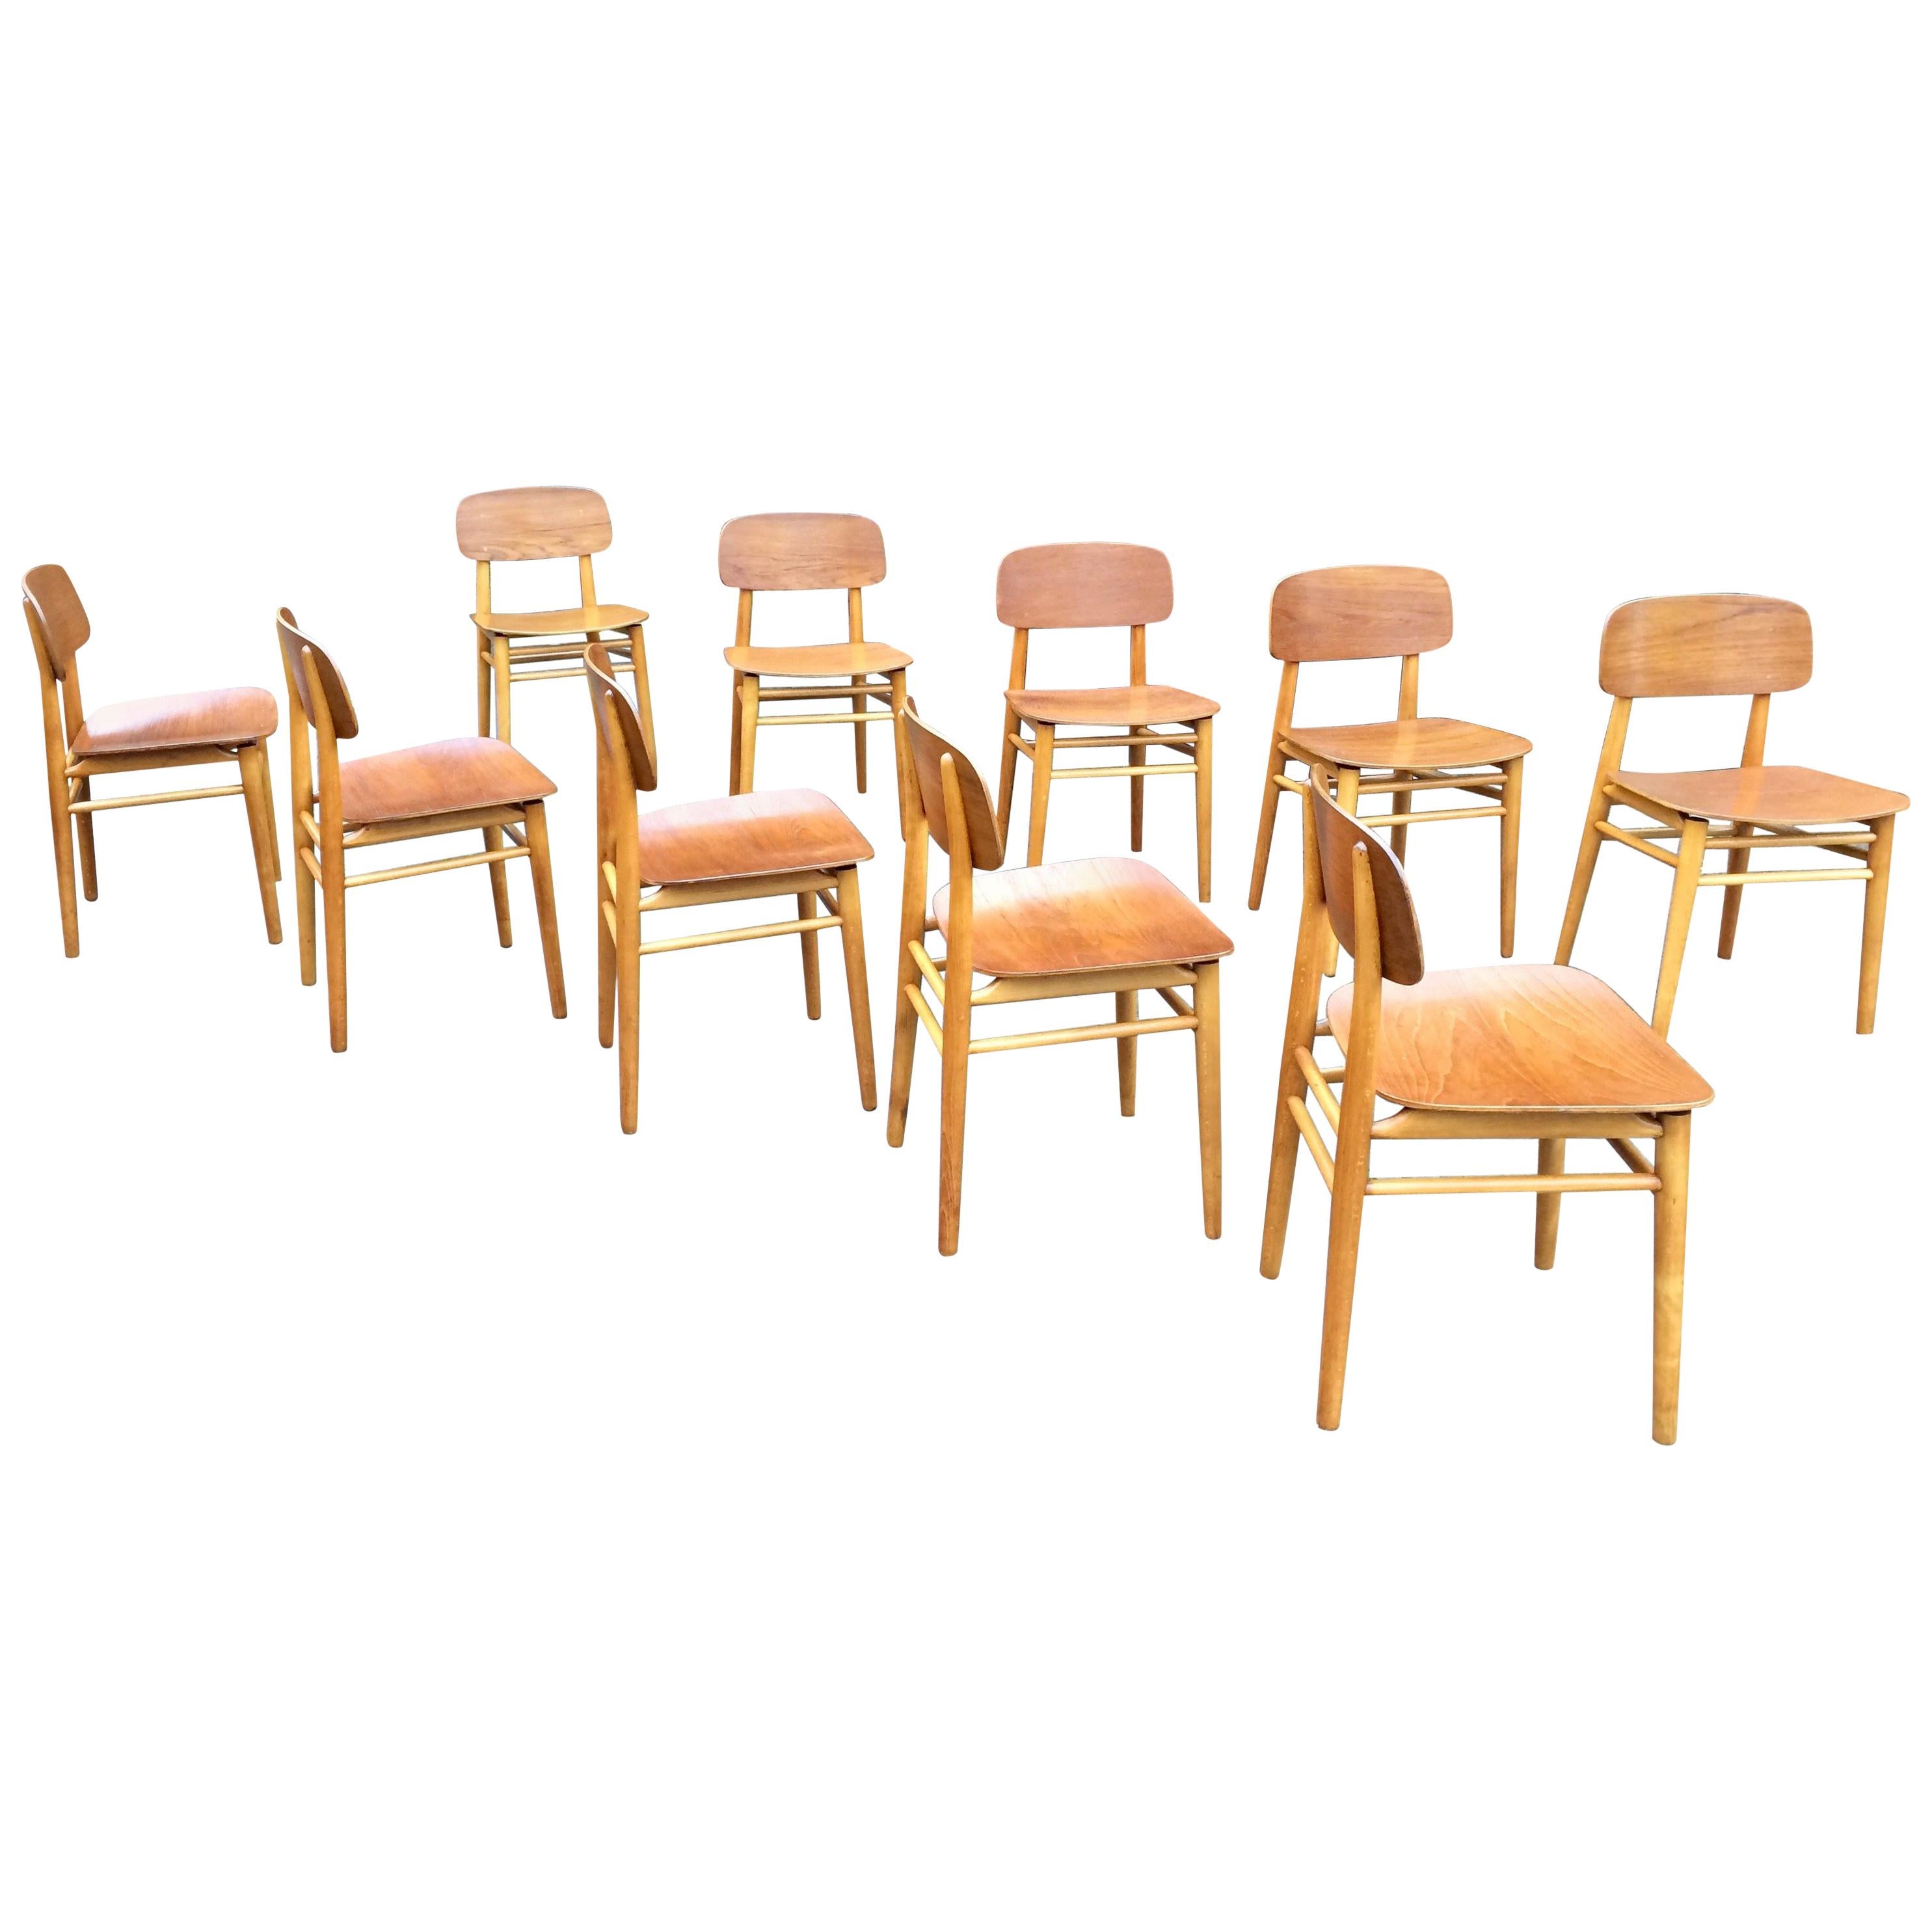 Mid-Century Modern Hans Wegner Teak Dining Chairs Set of Ten for Fritz Hansen 4101, Denmark